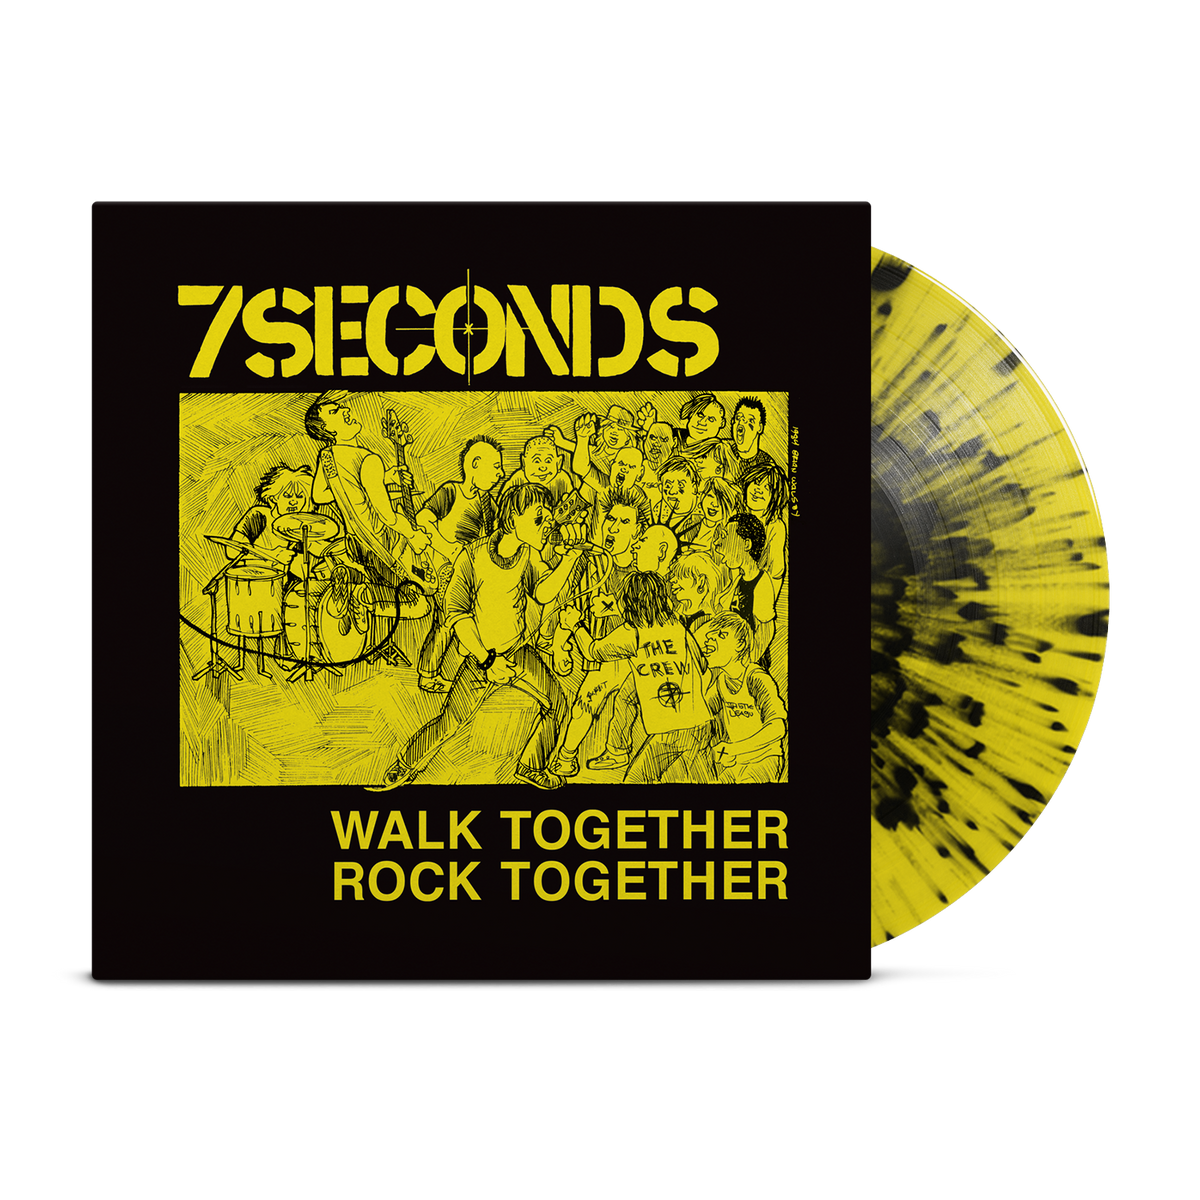 7 Seconds Walk Together Rock Together Yellow W/ Black Splatter  LP